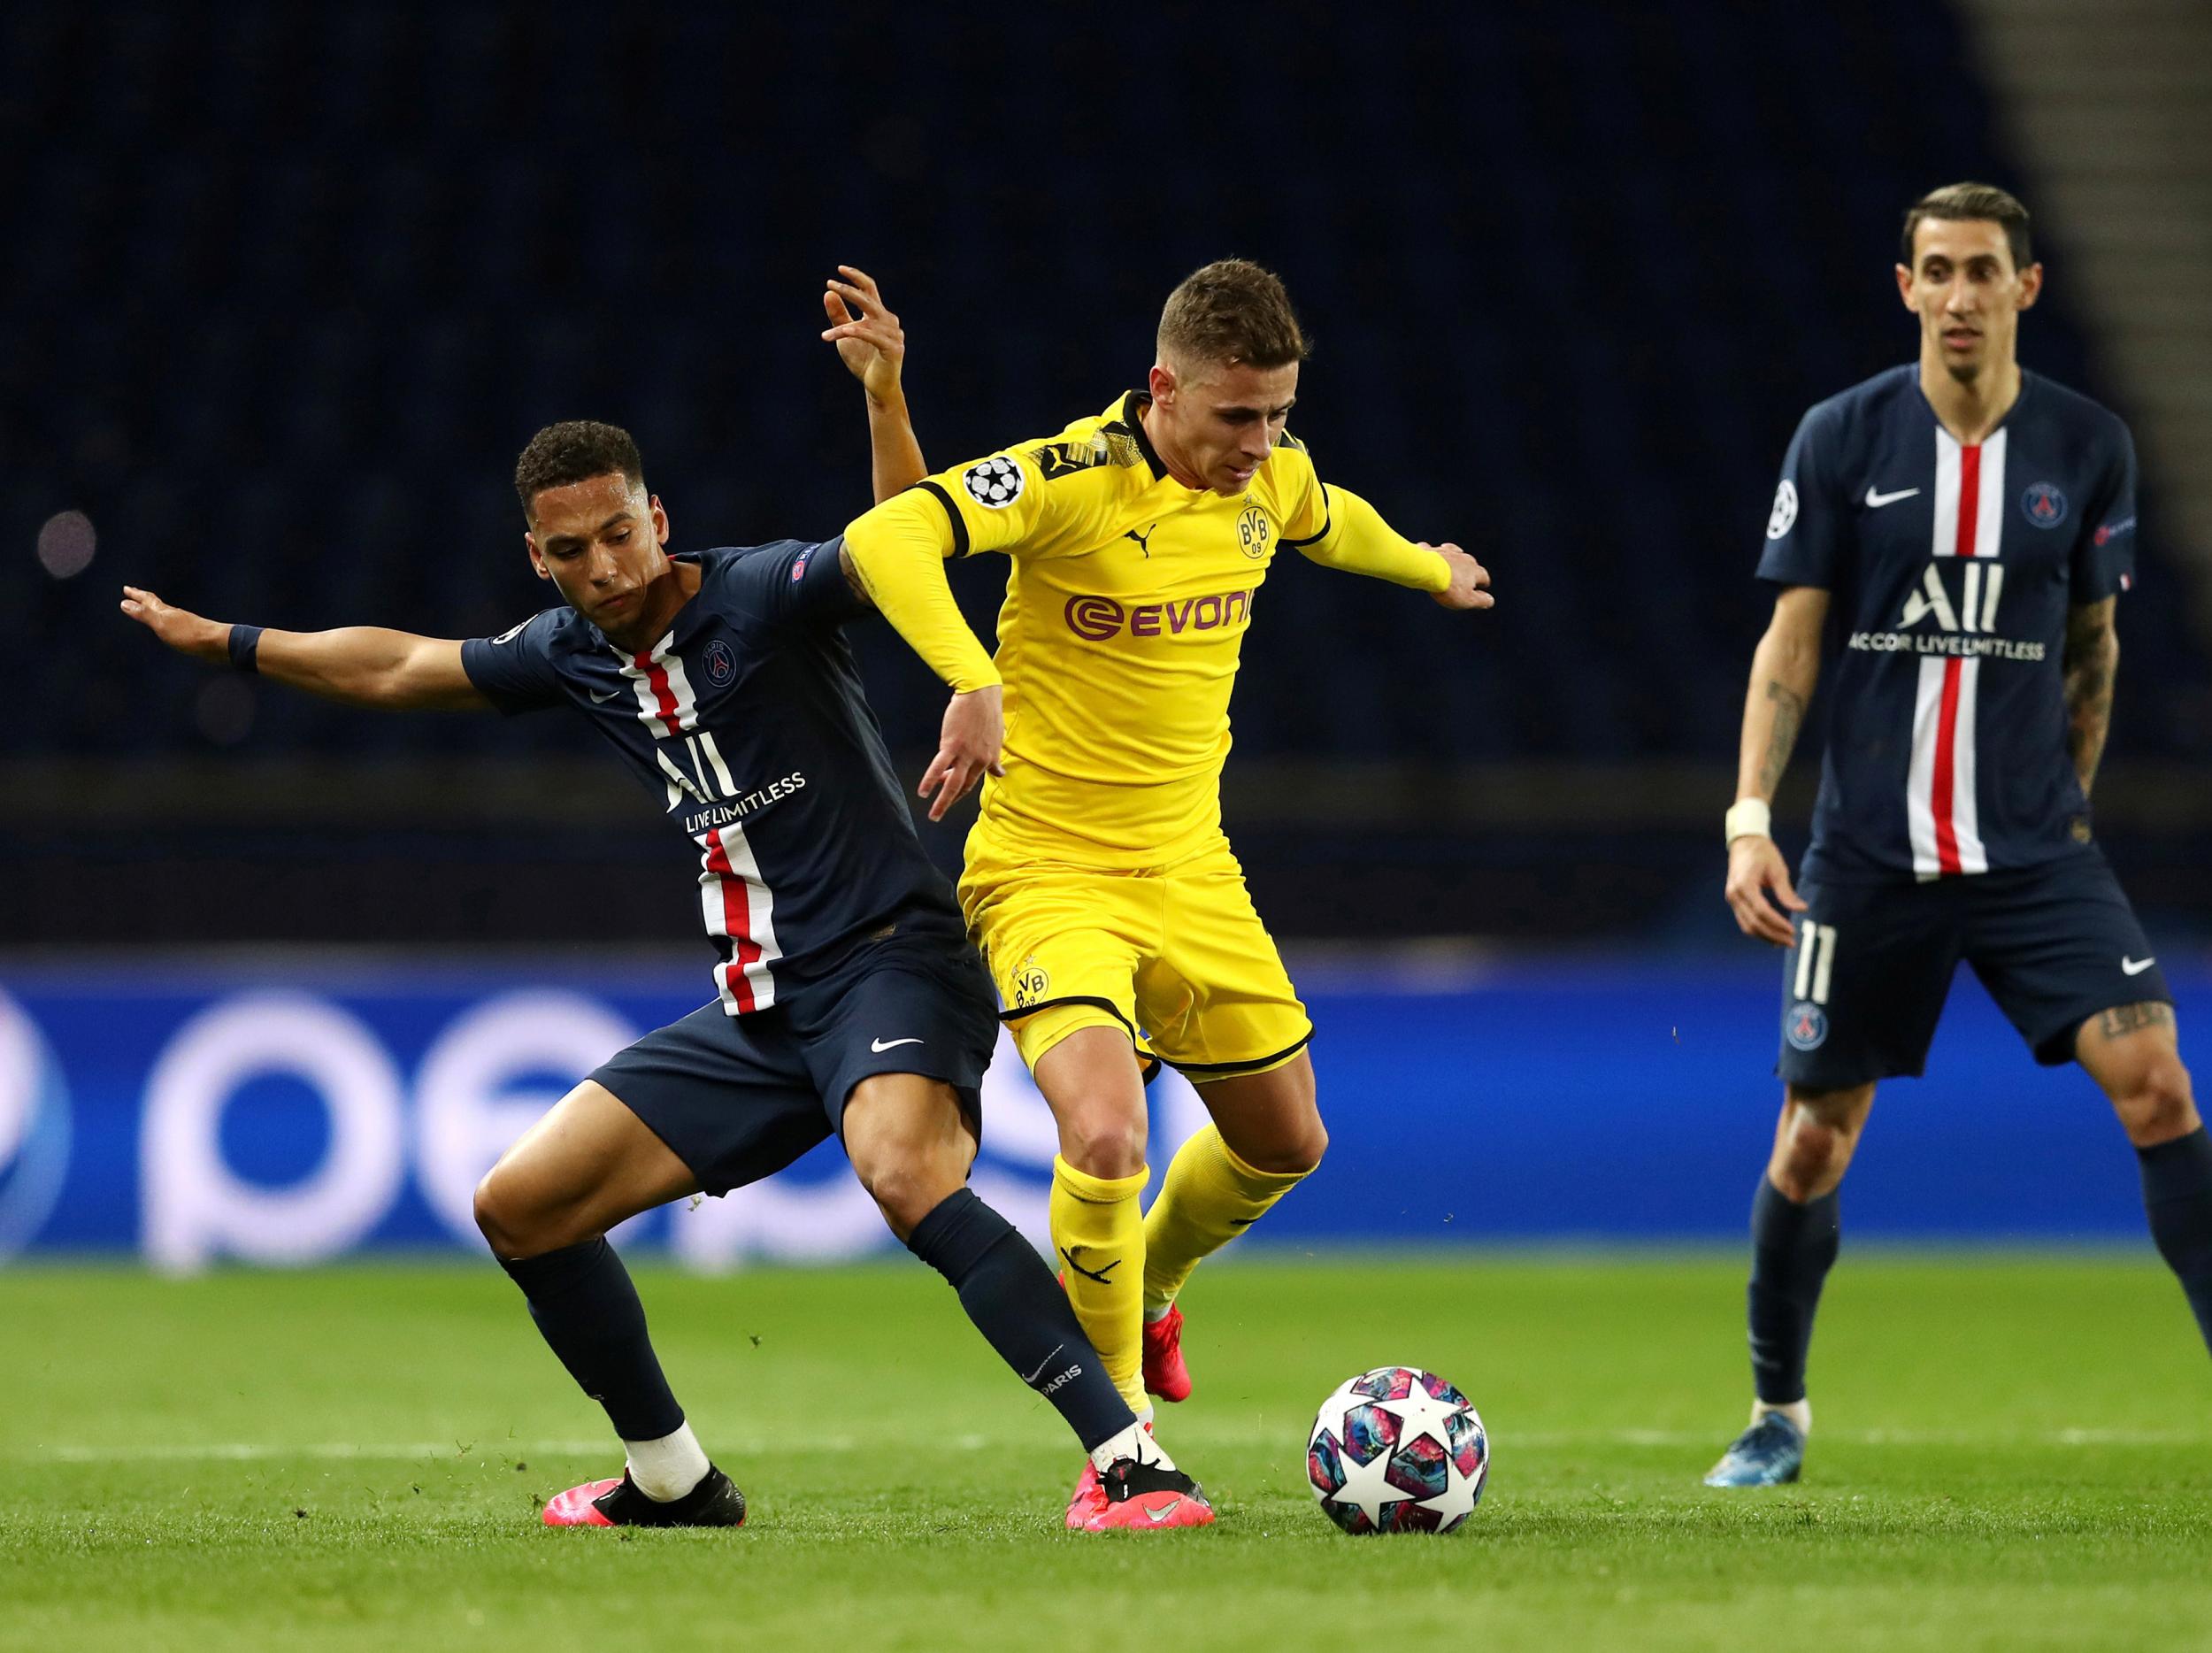 Dortmund were unable to score in Paris